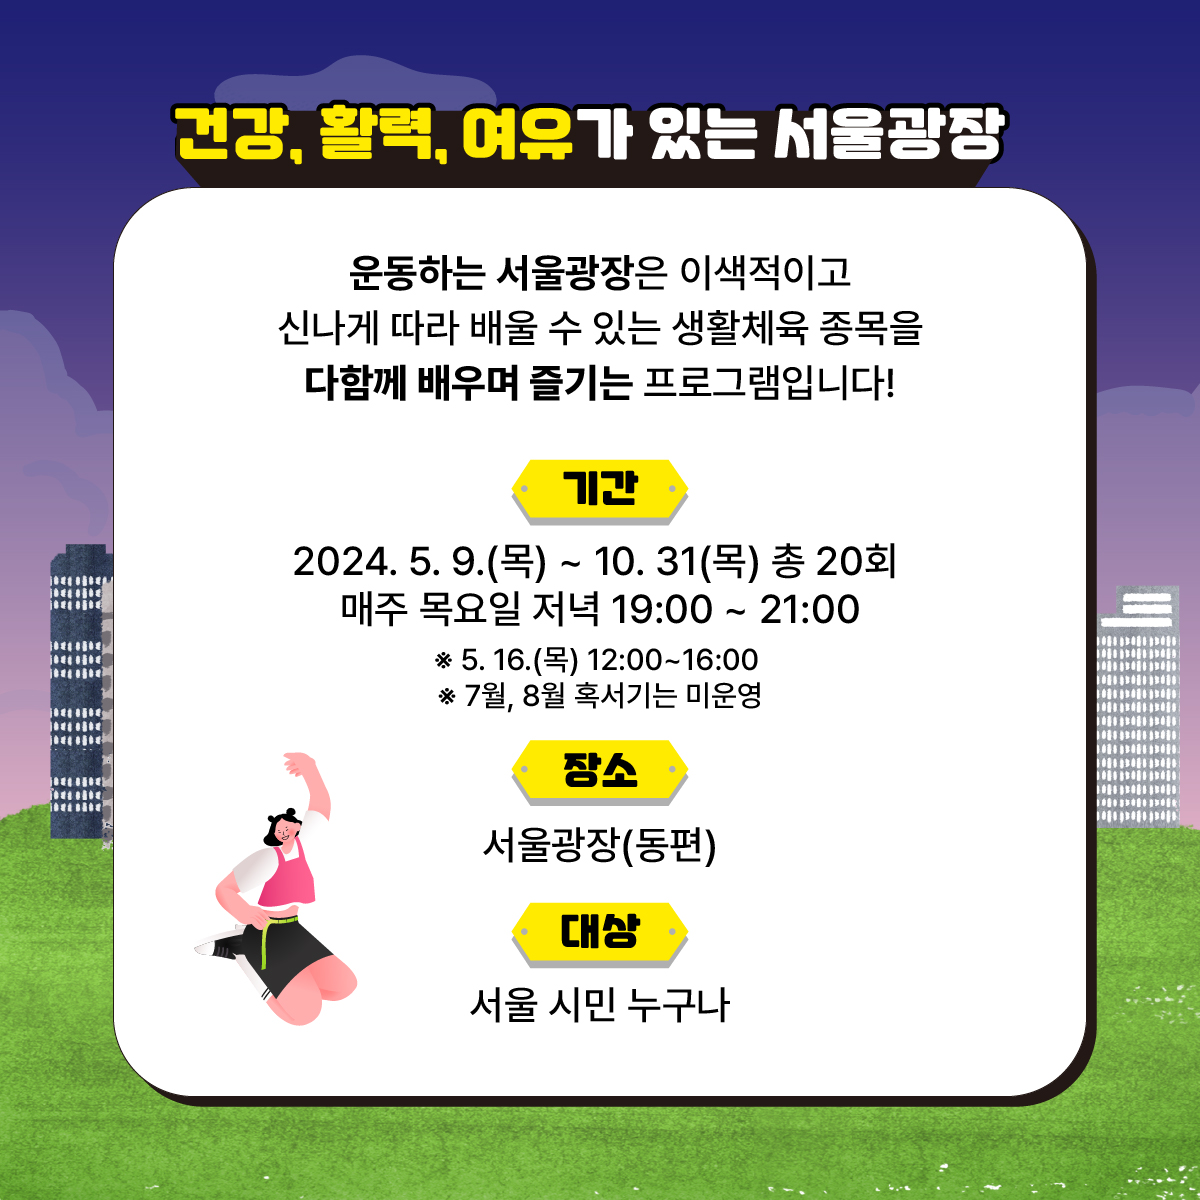 도심 속에서 시민들이 쉽고 편하게 운동을 즐길수있도록
서울광장에서 특별하고 다양한 클래스가 열립니다
